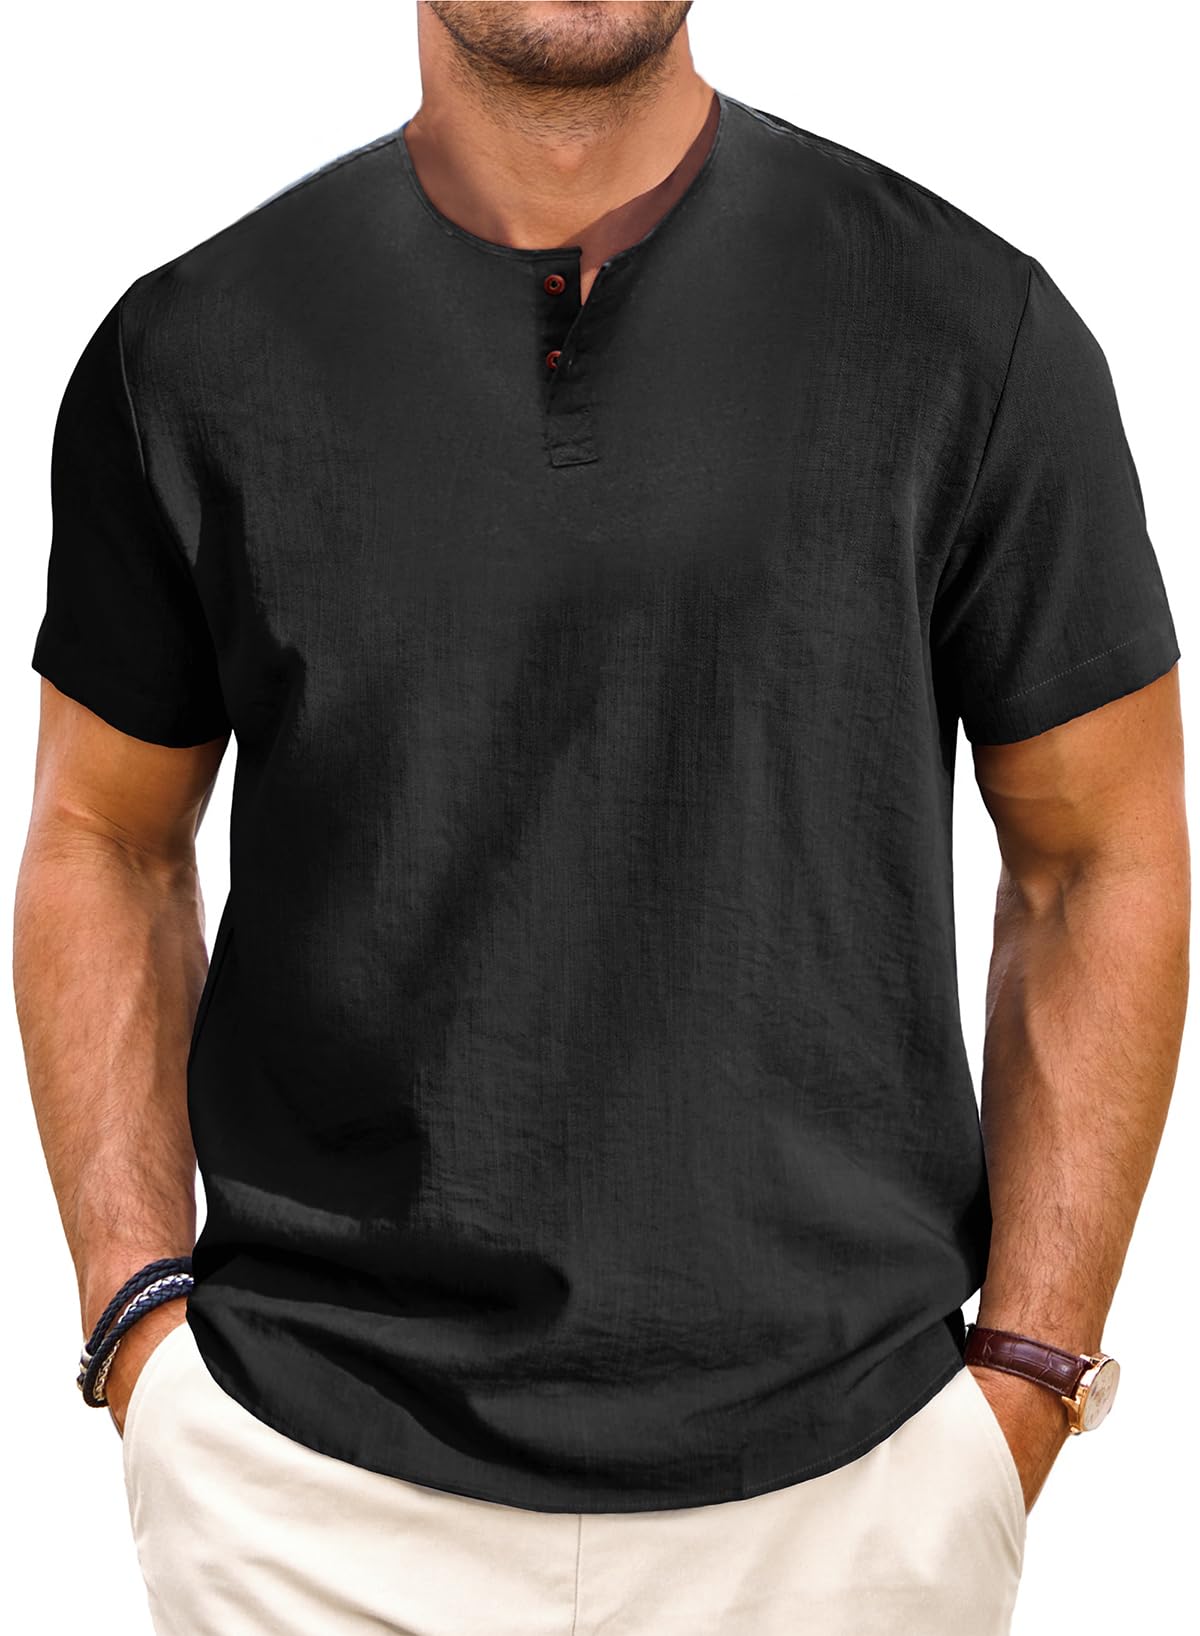 Men's Casual Linen Short Sleeve T-Shirt